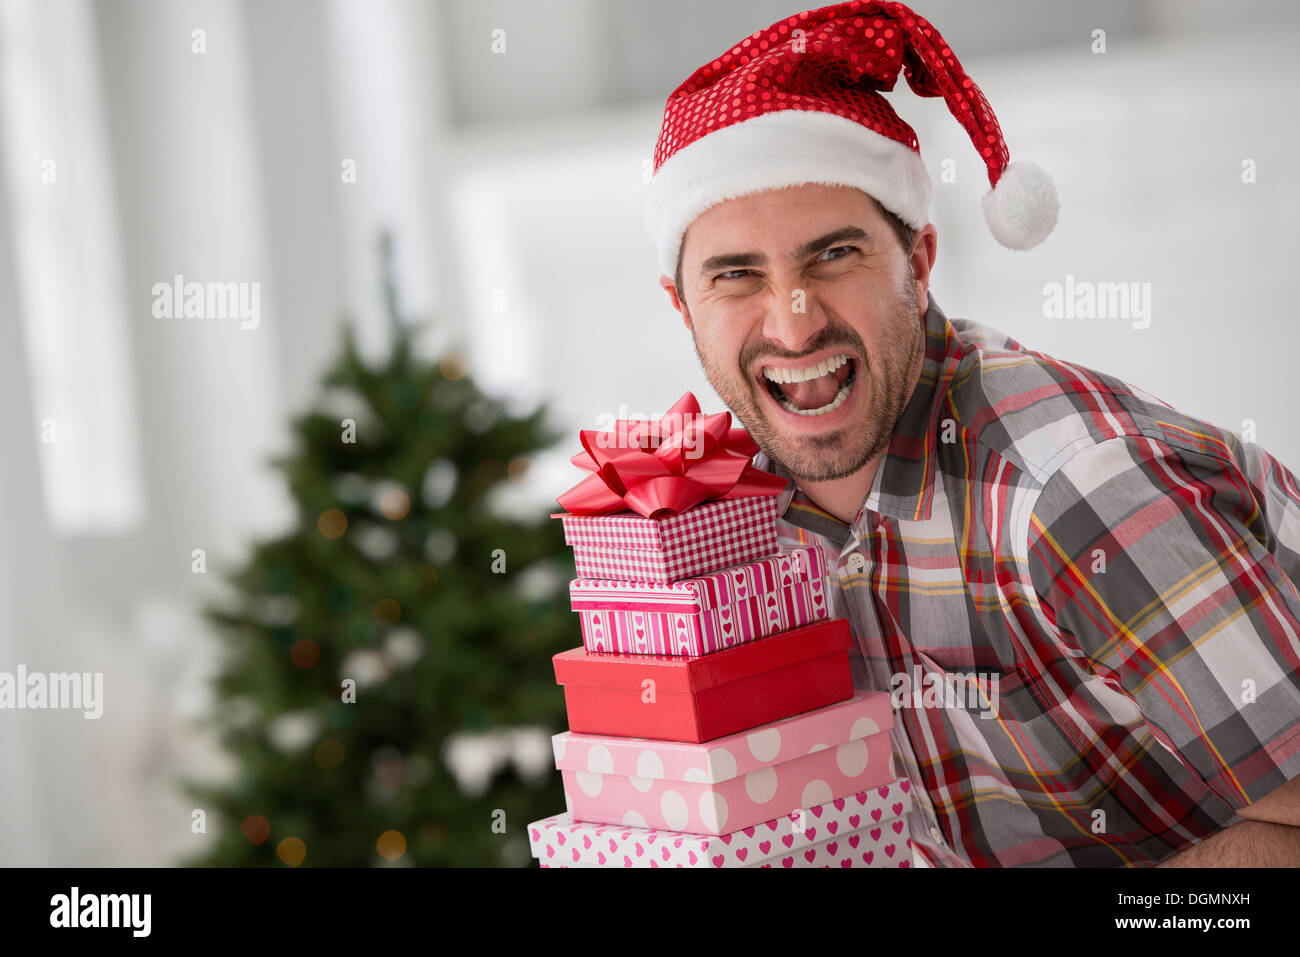 Ufficio interno. Per celebrare il Natale. Un uomo in un cappello da Babbo Natale una catasta di regali. Albero di Natale decorato. Foto Stock